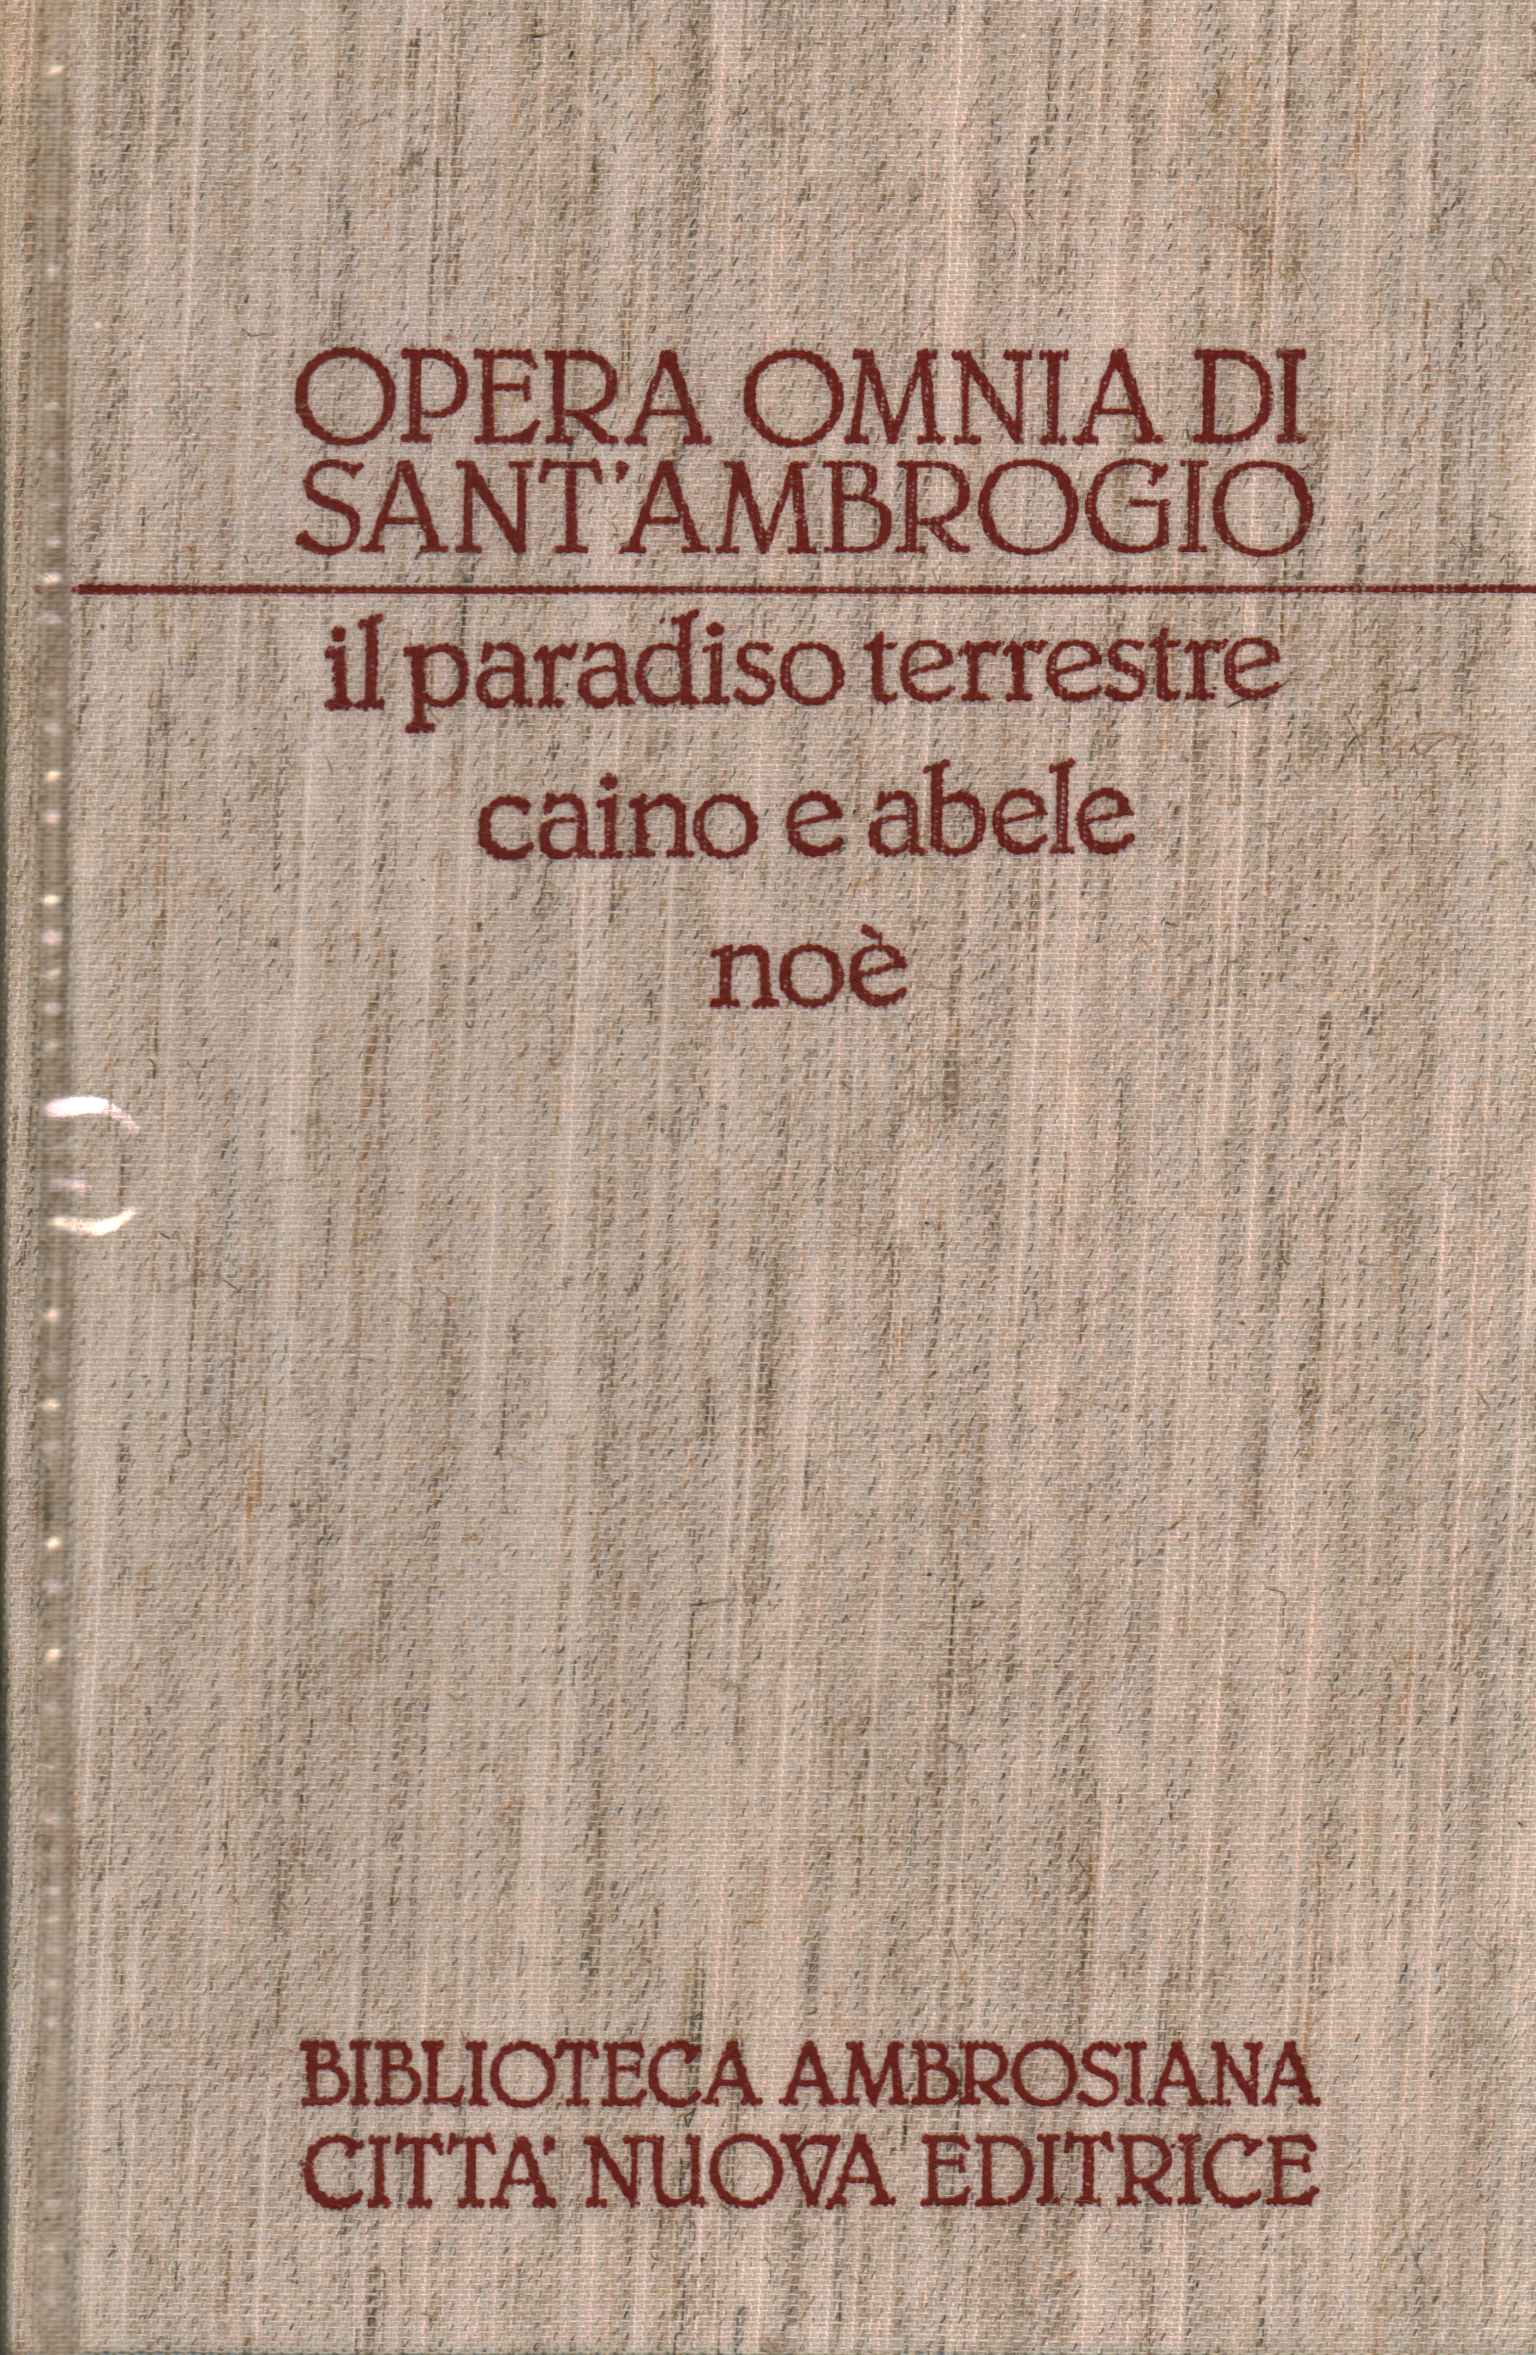 Opera Omnia of Sant'Ambrogio. OR